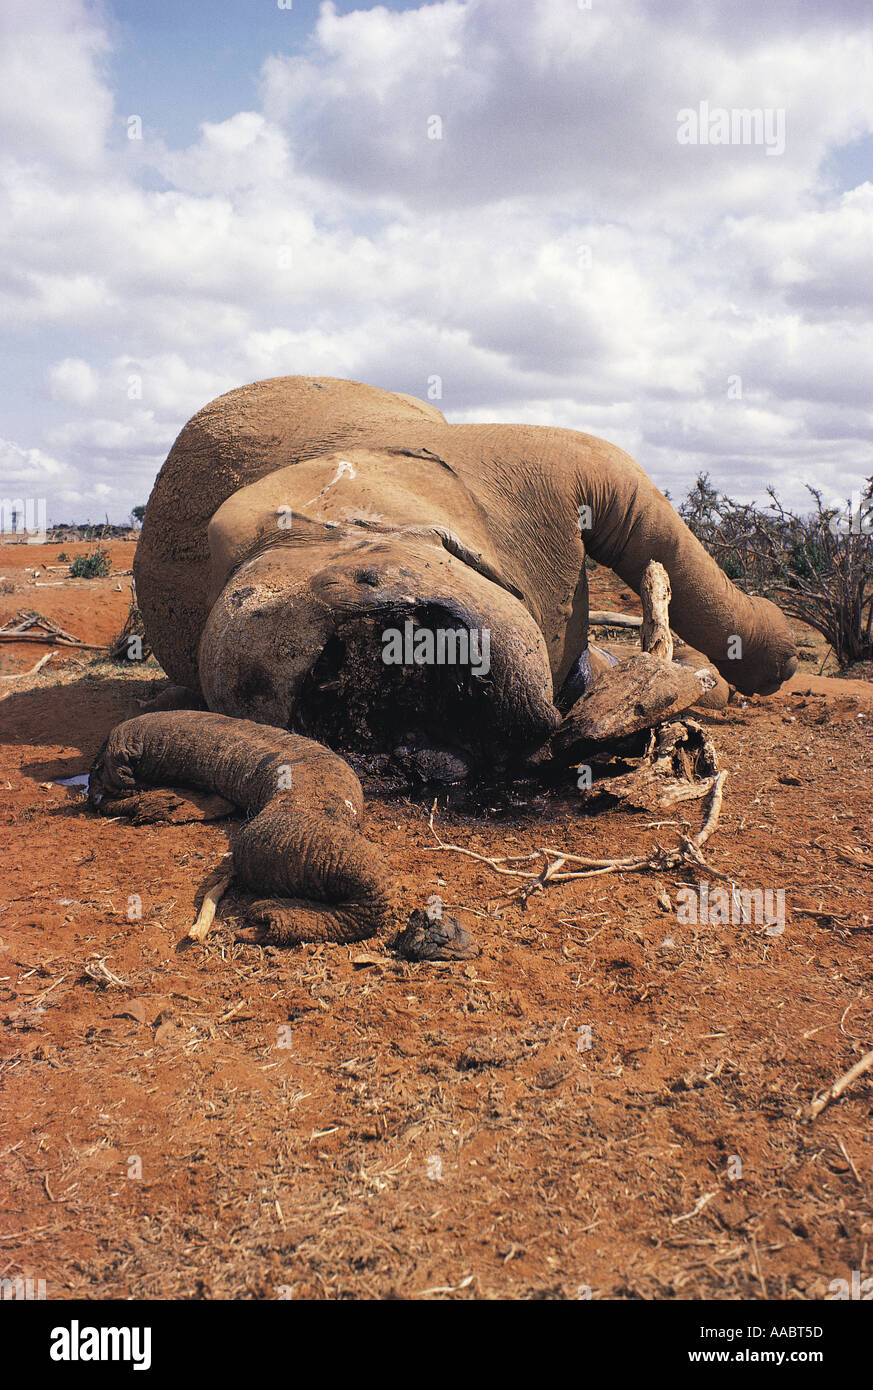 Muerto por cazadores furtivos de elefantes muertos Foto de stock